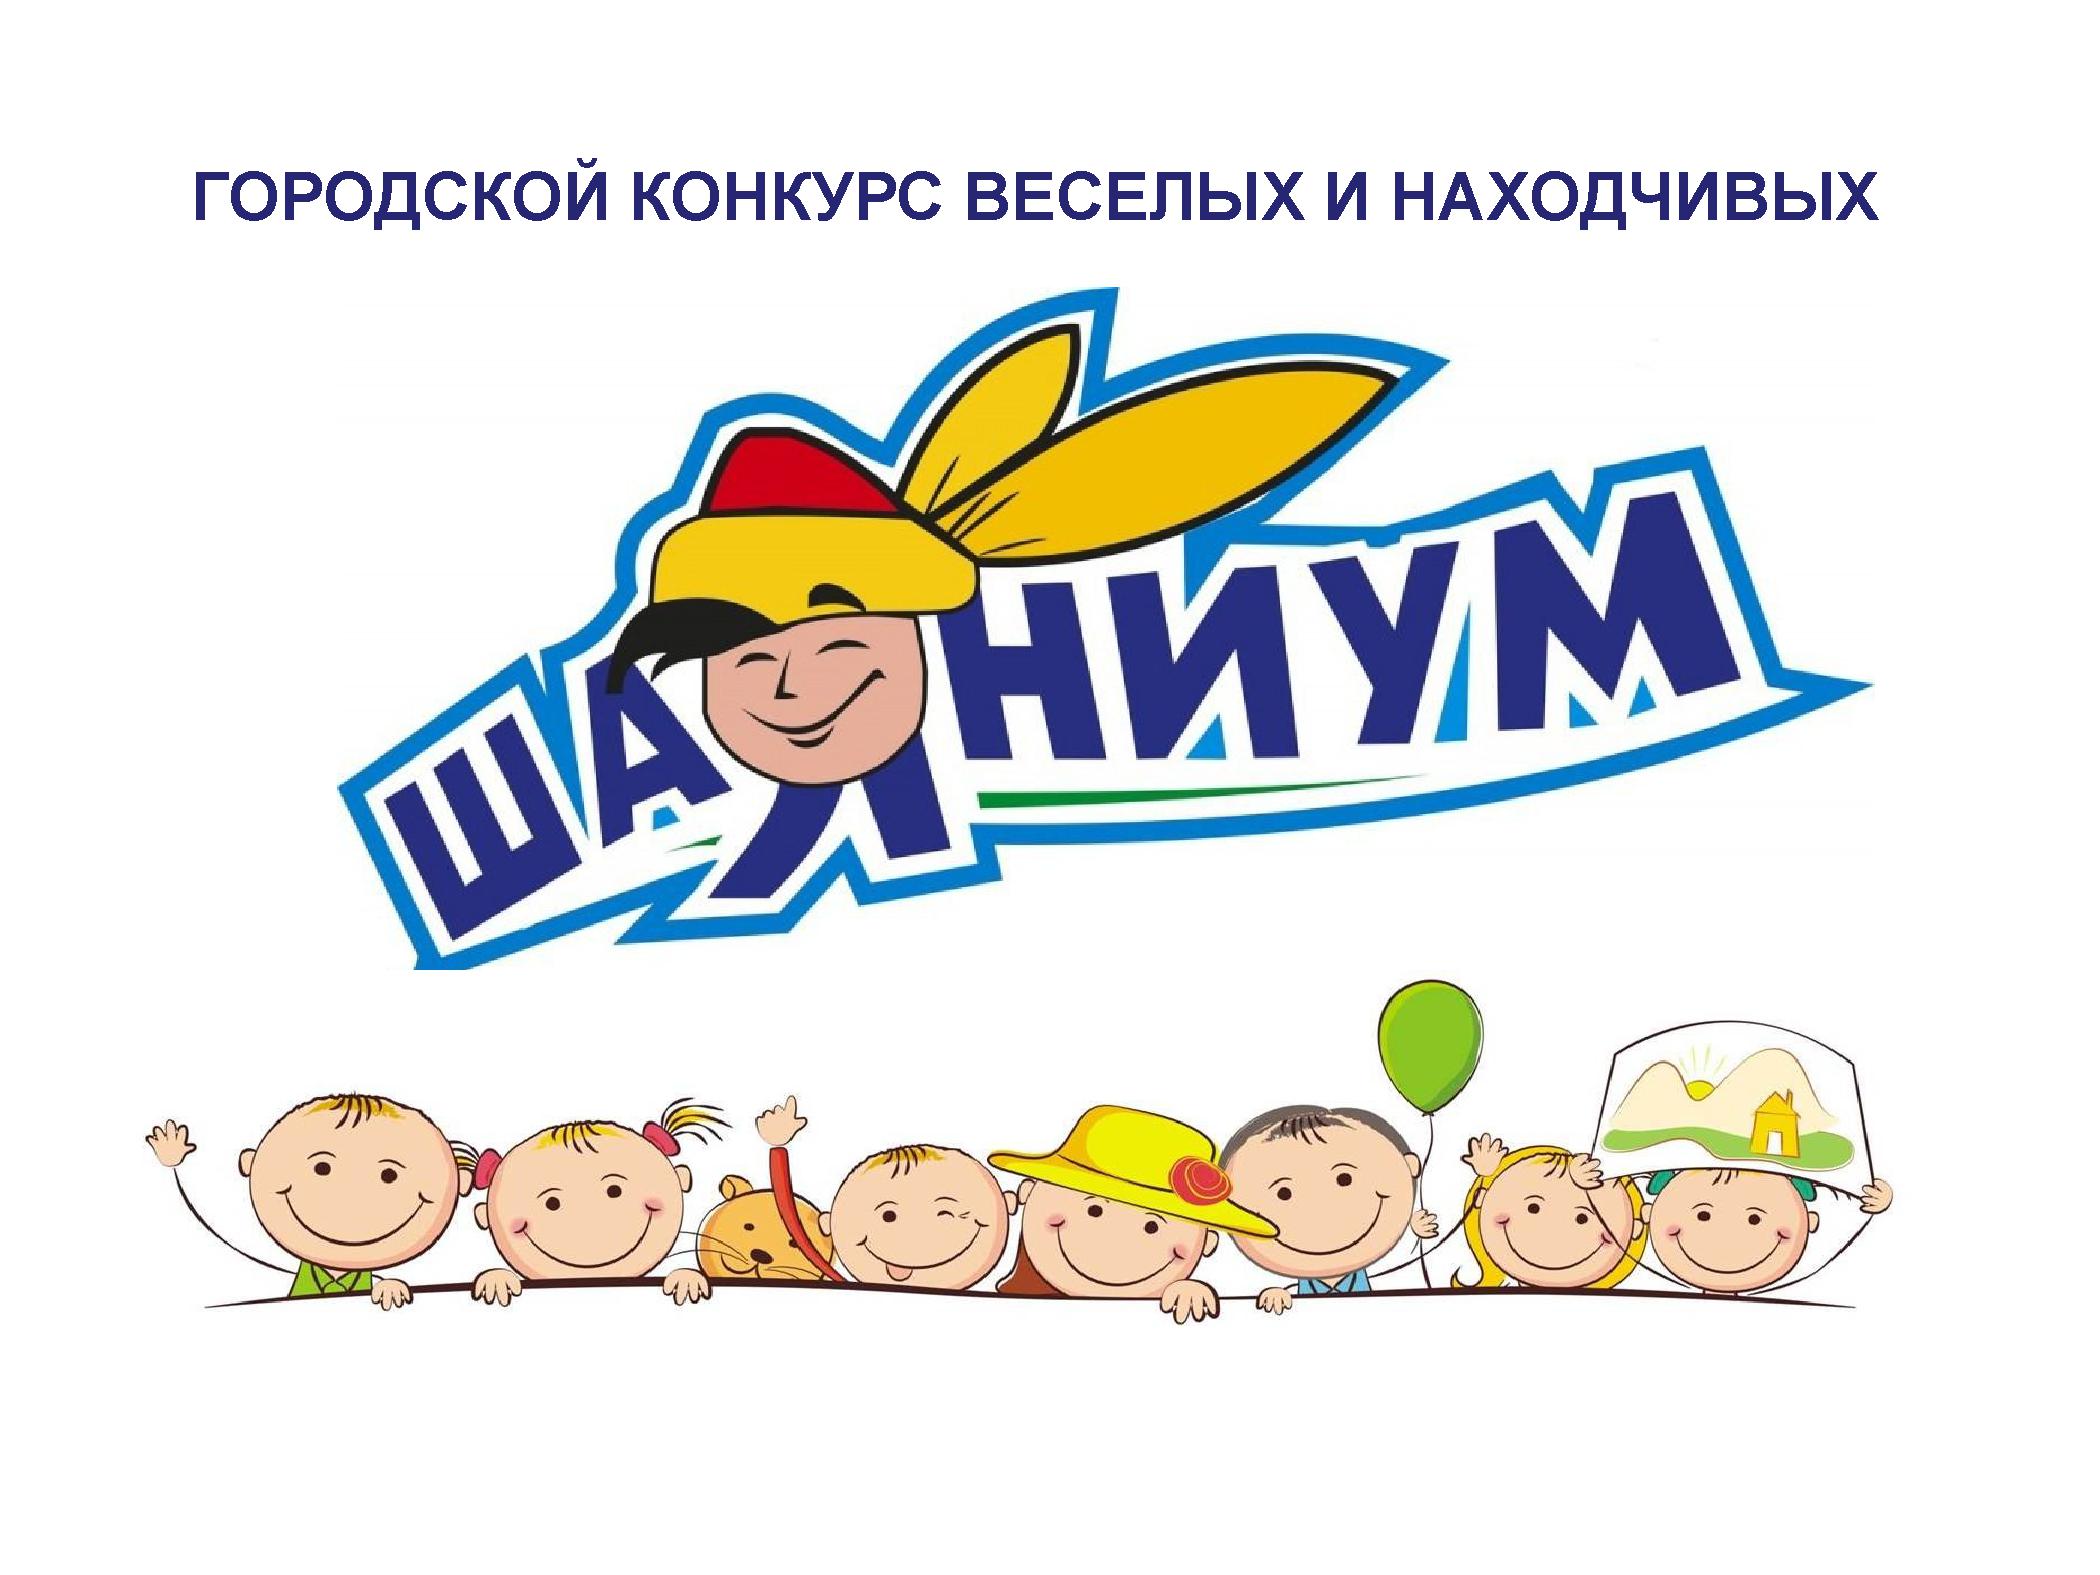 Городской конкурс  веселых и находчивых  на башкирском языке  «Шаяниум»